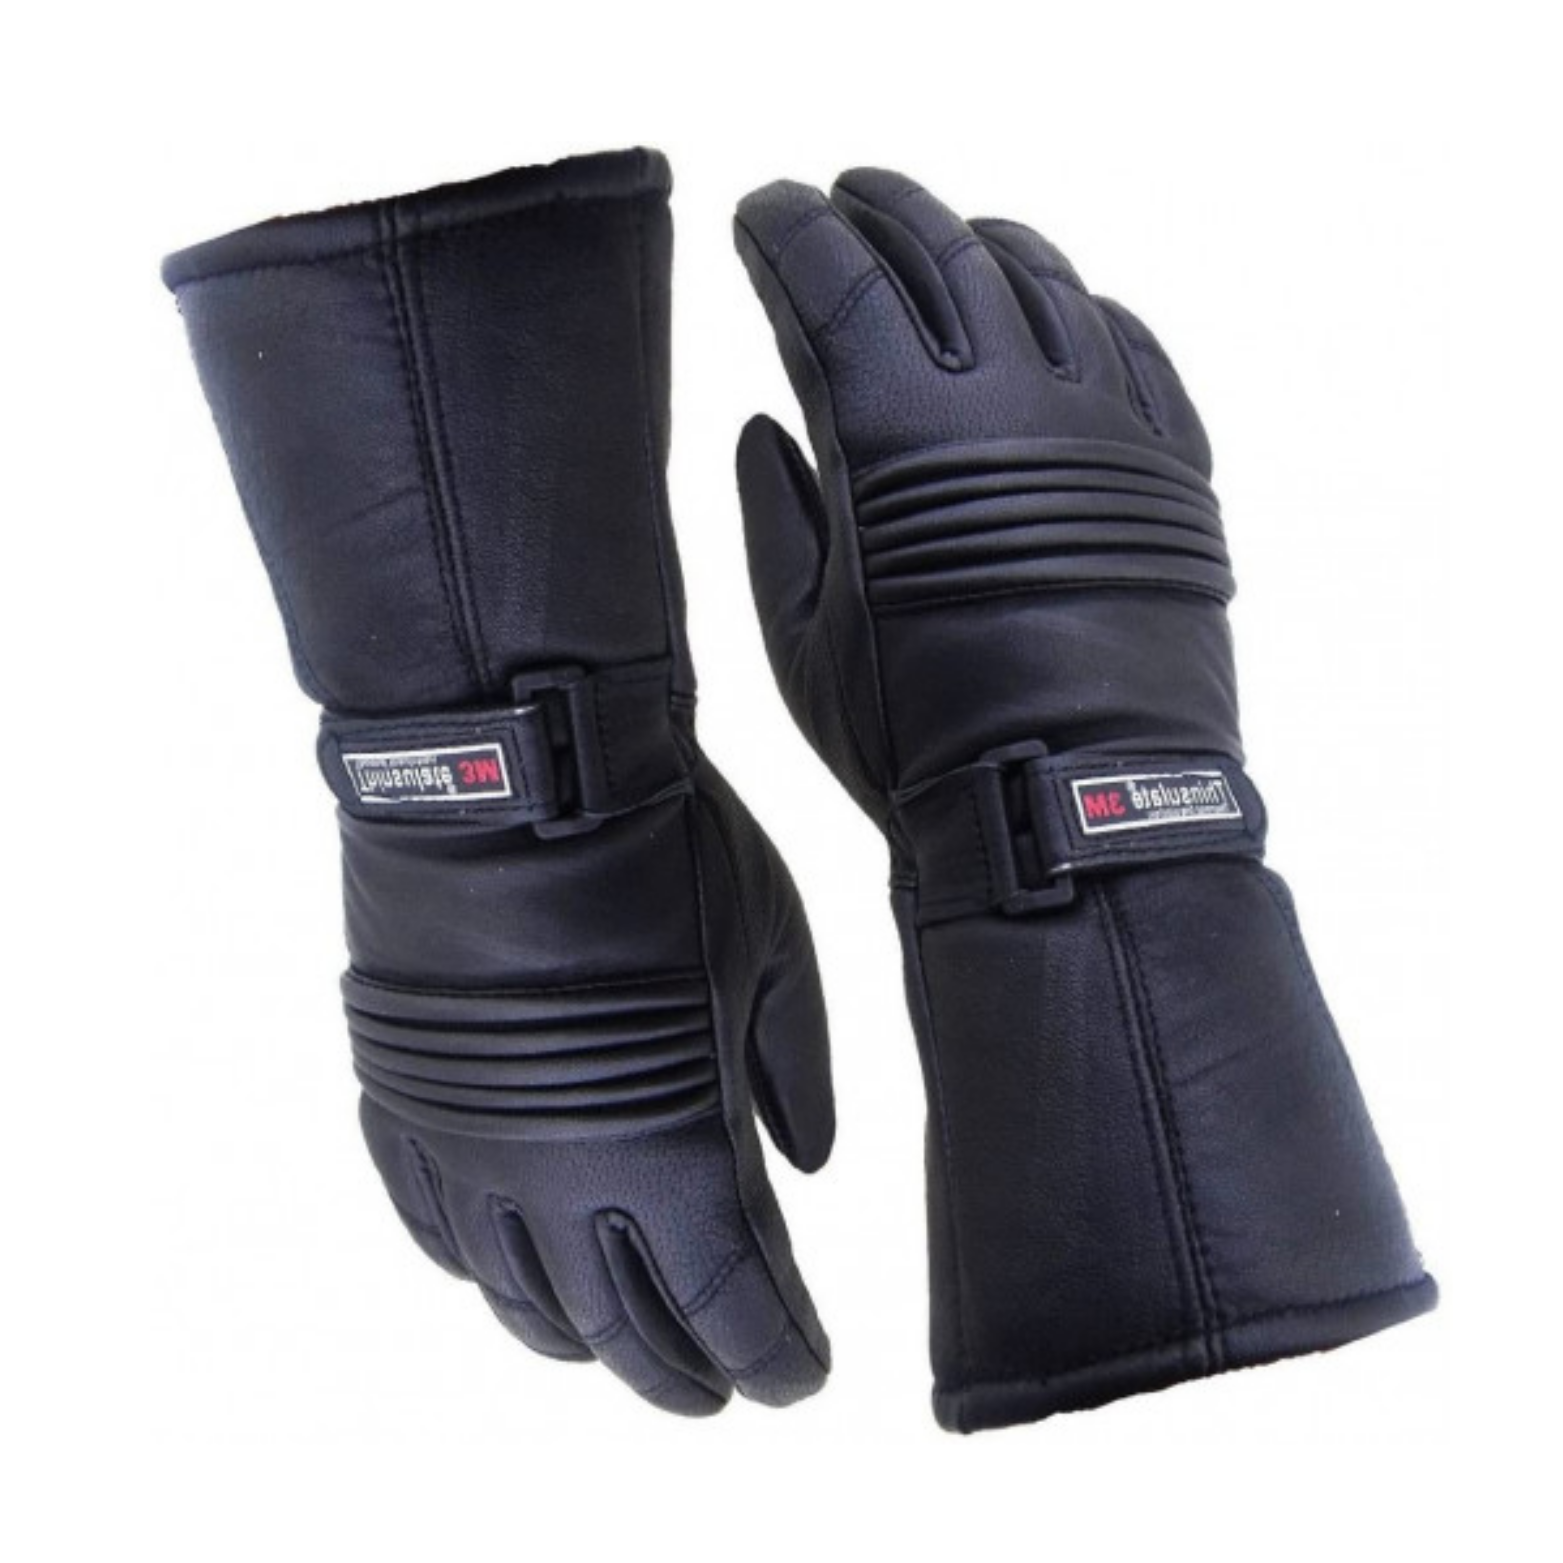 3M Thinsulate handschoenen, leer. waterdicht en ademend. maat XL